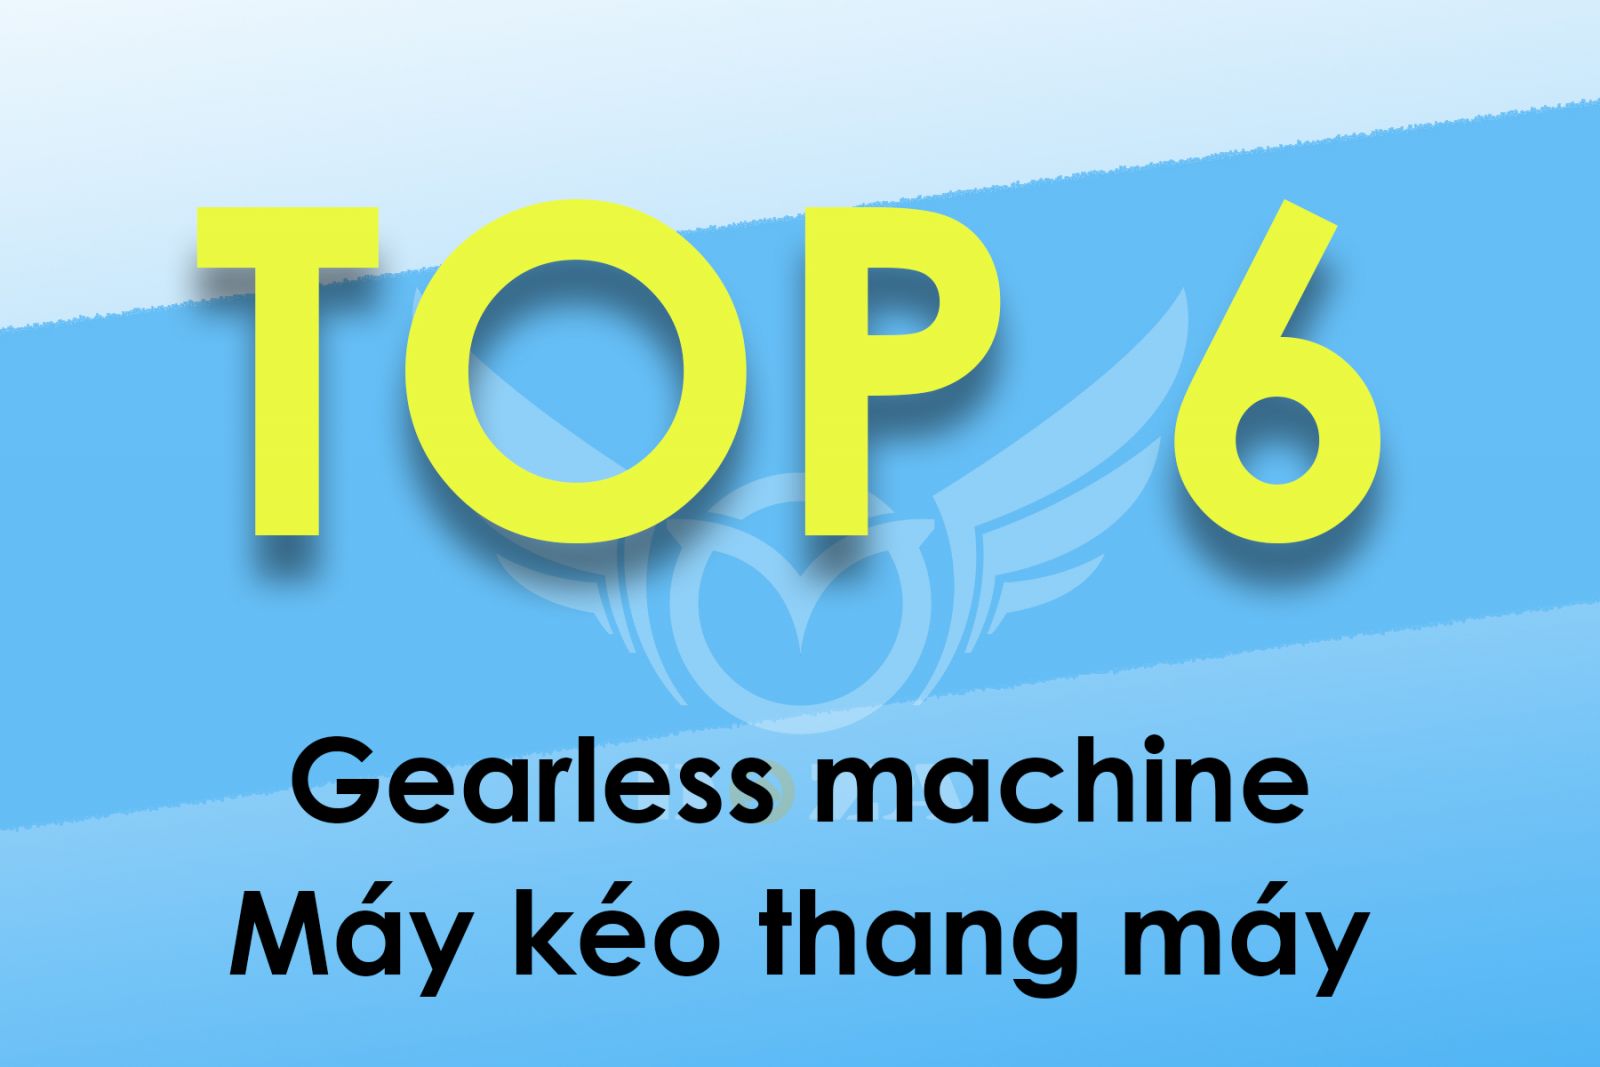 ZIEHL-ABEGG - The best option for elevator traction machine in Vietnam !!